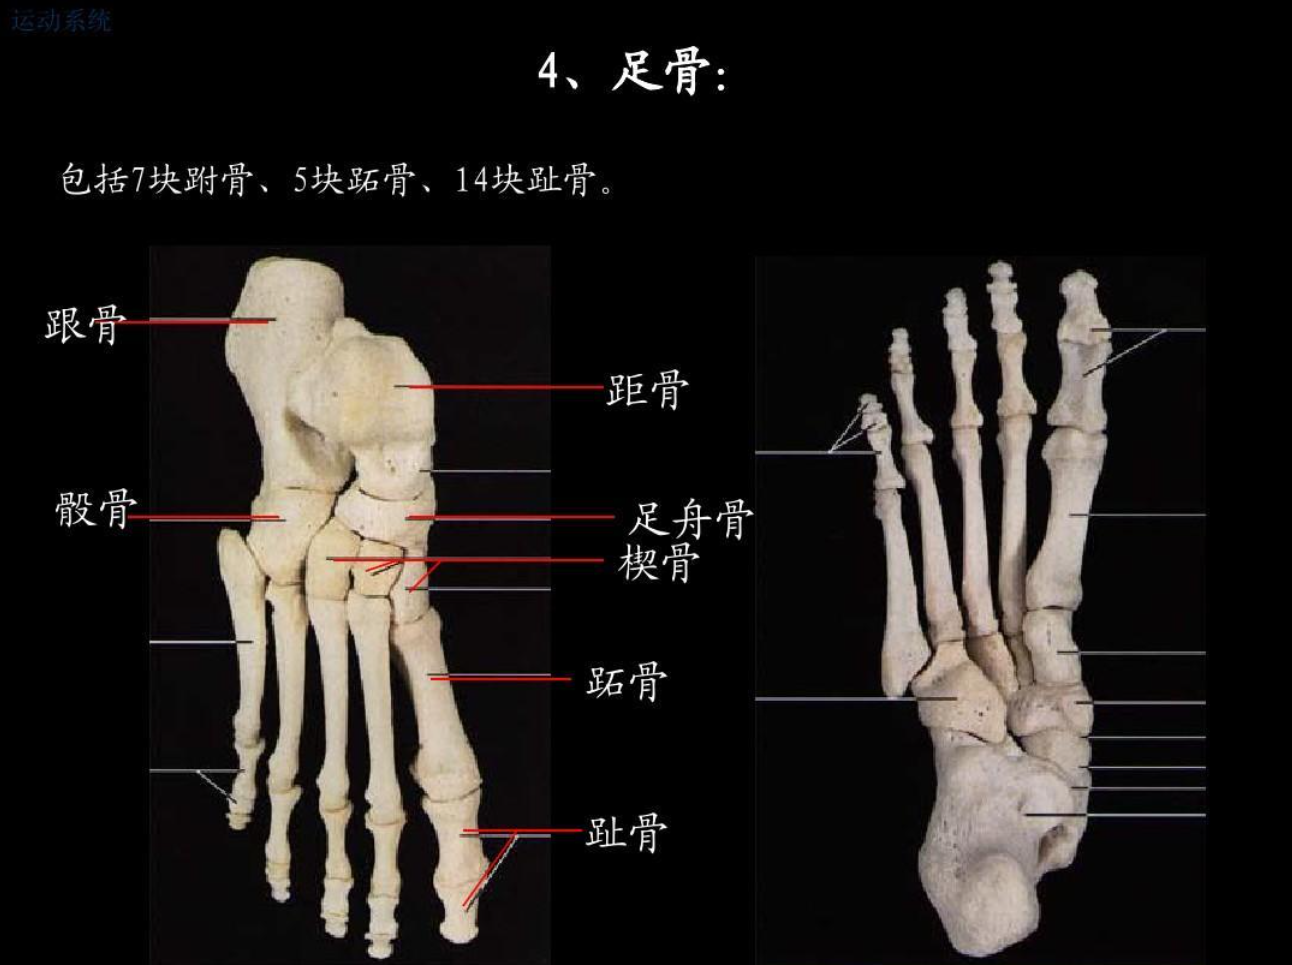 脚踝骨骼结构图_脚踝骨骼立体图_微信公众号文章